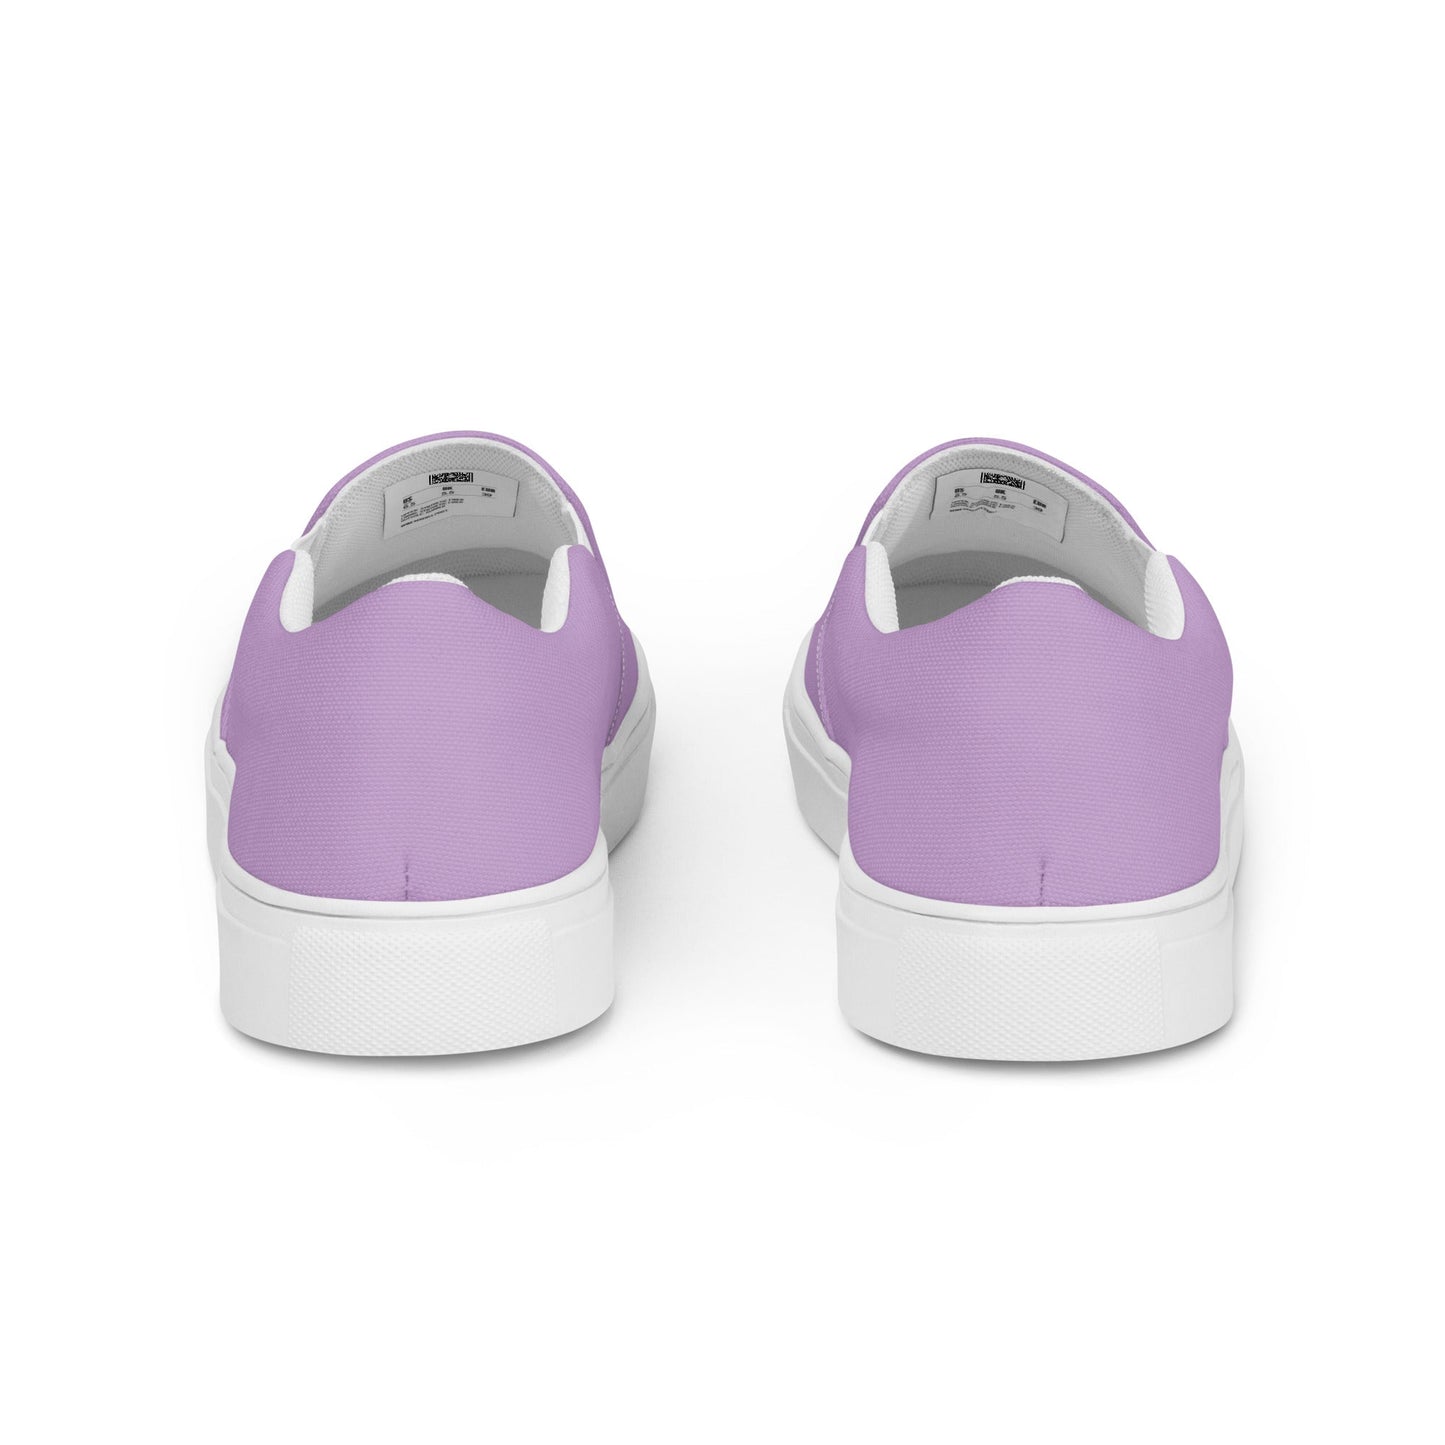 klasneakers Women’s slip-on canvas shoes - Pinky Purple